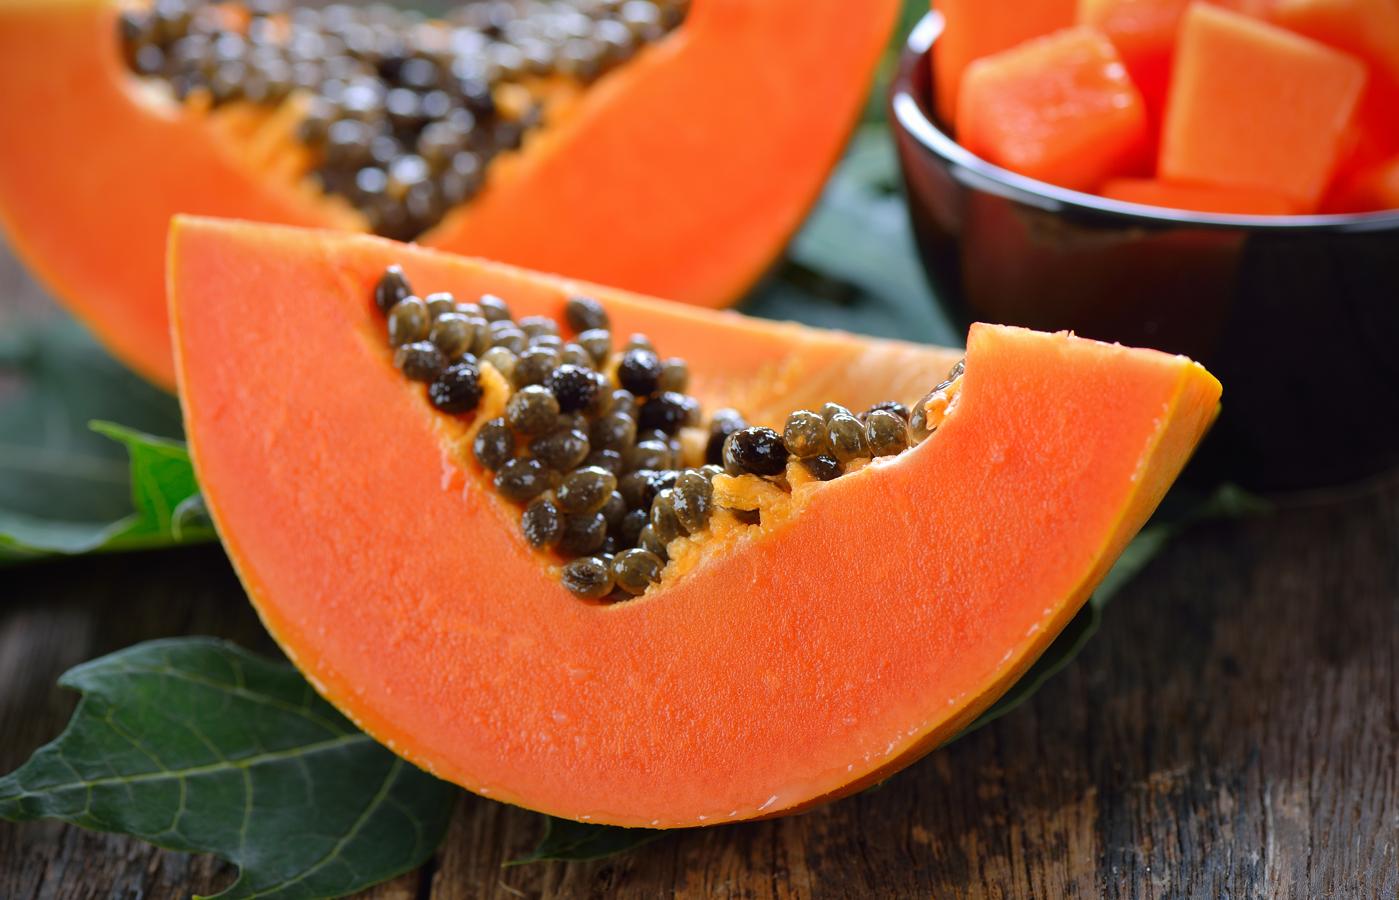 La papaya es una de las frutas más ricas en vitamina C. Esta fruta de tipo carnoso aporta unos 80 mg de vitamina C por cada 100 gramos, lo que podría equivaler a la cantidad que supone una naranja de más de 150 gramos. La <a href="https://www.abc.es/bienestar/abci-picar-entre-horas-alimentos-303142635703-20191010022939_galeria.html" target="_blank">papaya </a>tiene pocas calorías y es además un buen diurético.